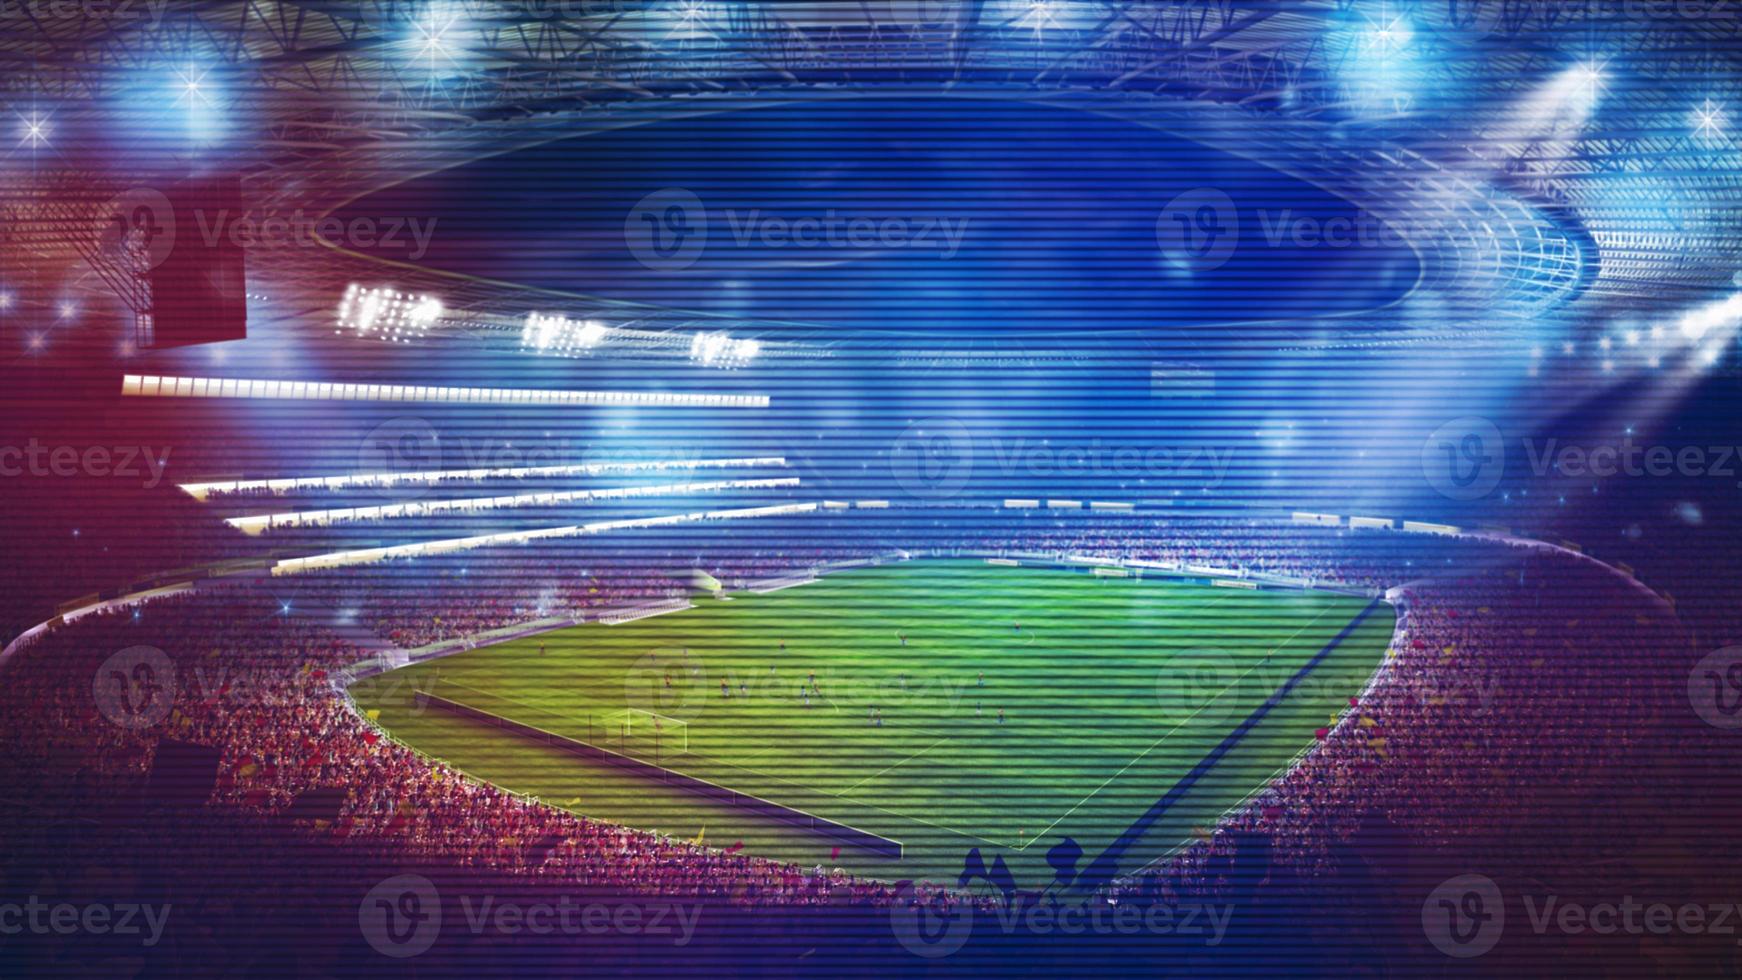 bakgrund av en fotboll stadion med ljus effekter full av fläktar under en natt spel. 3d tolkning foto